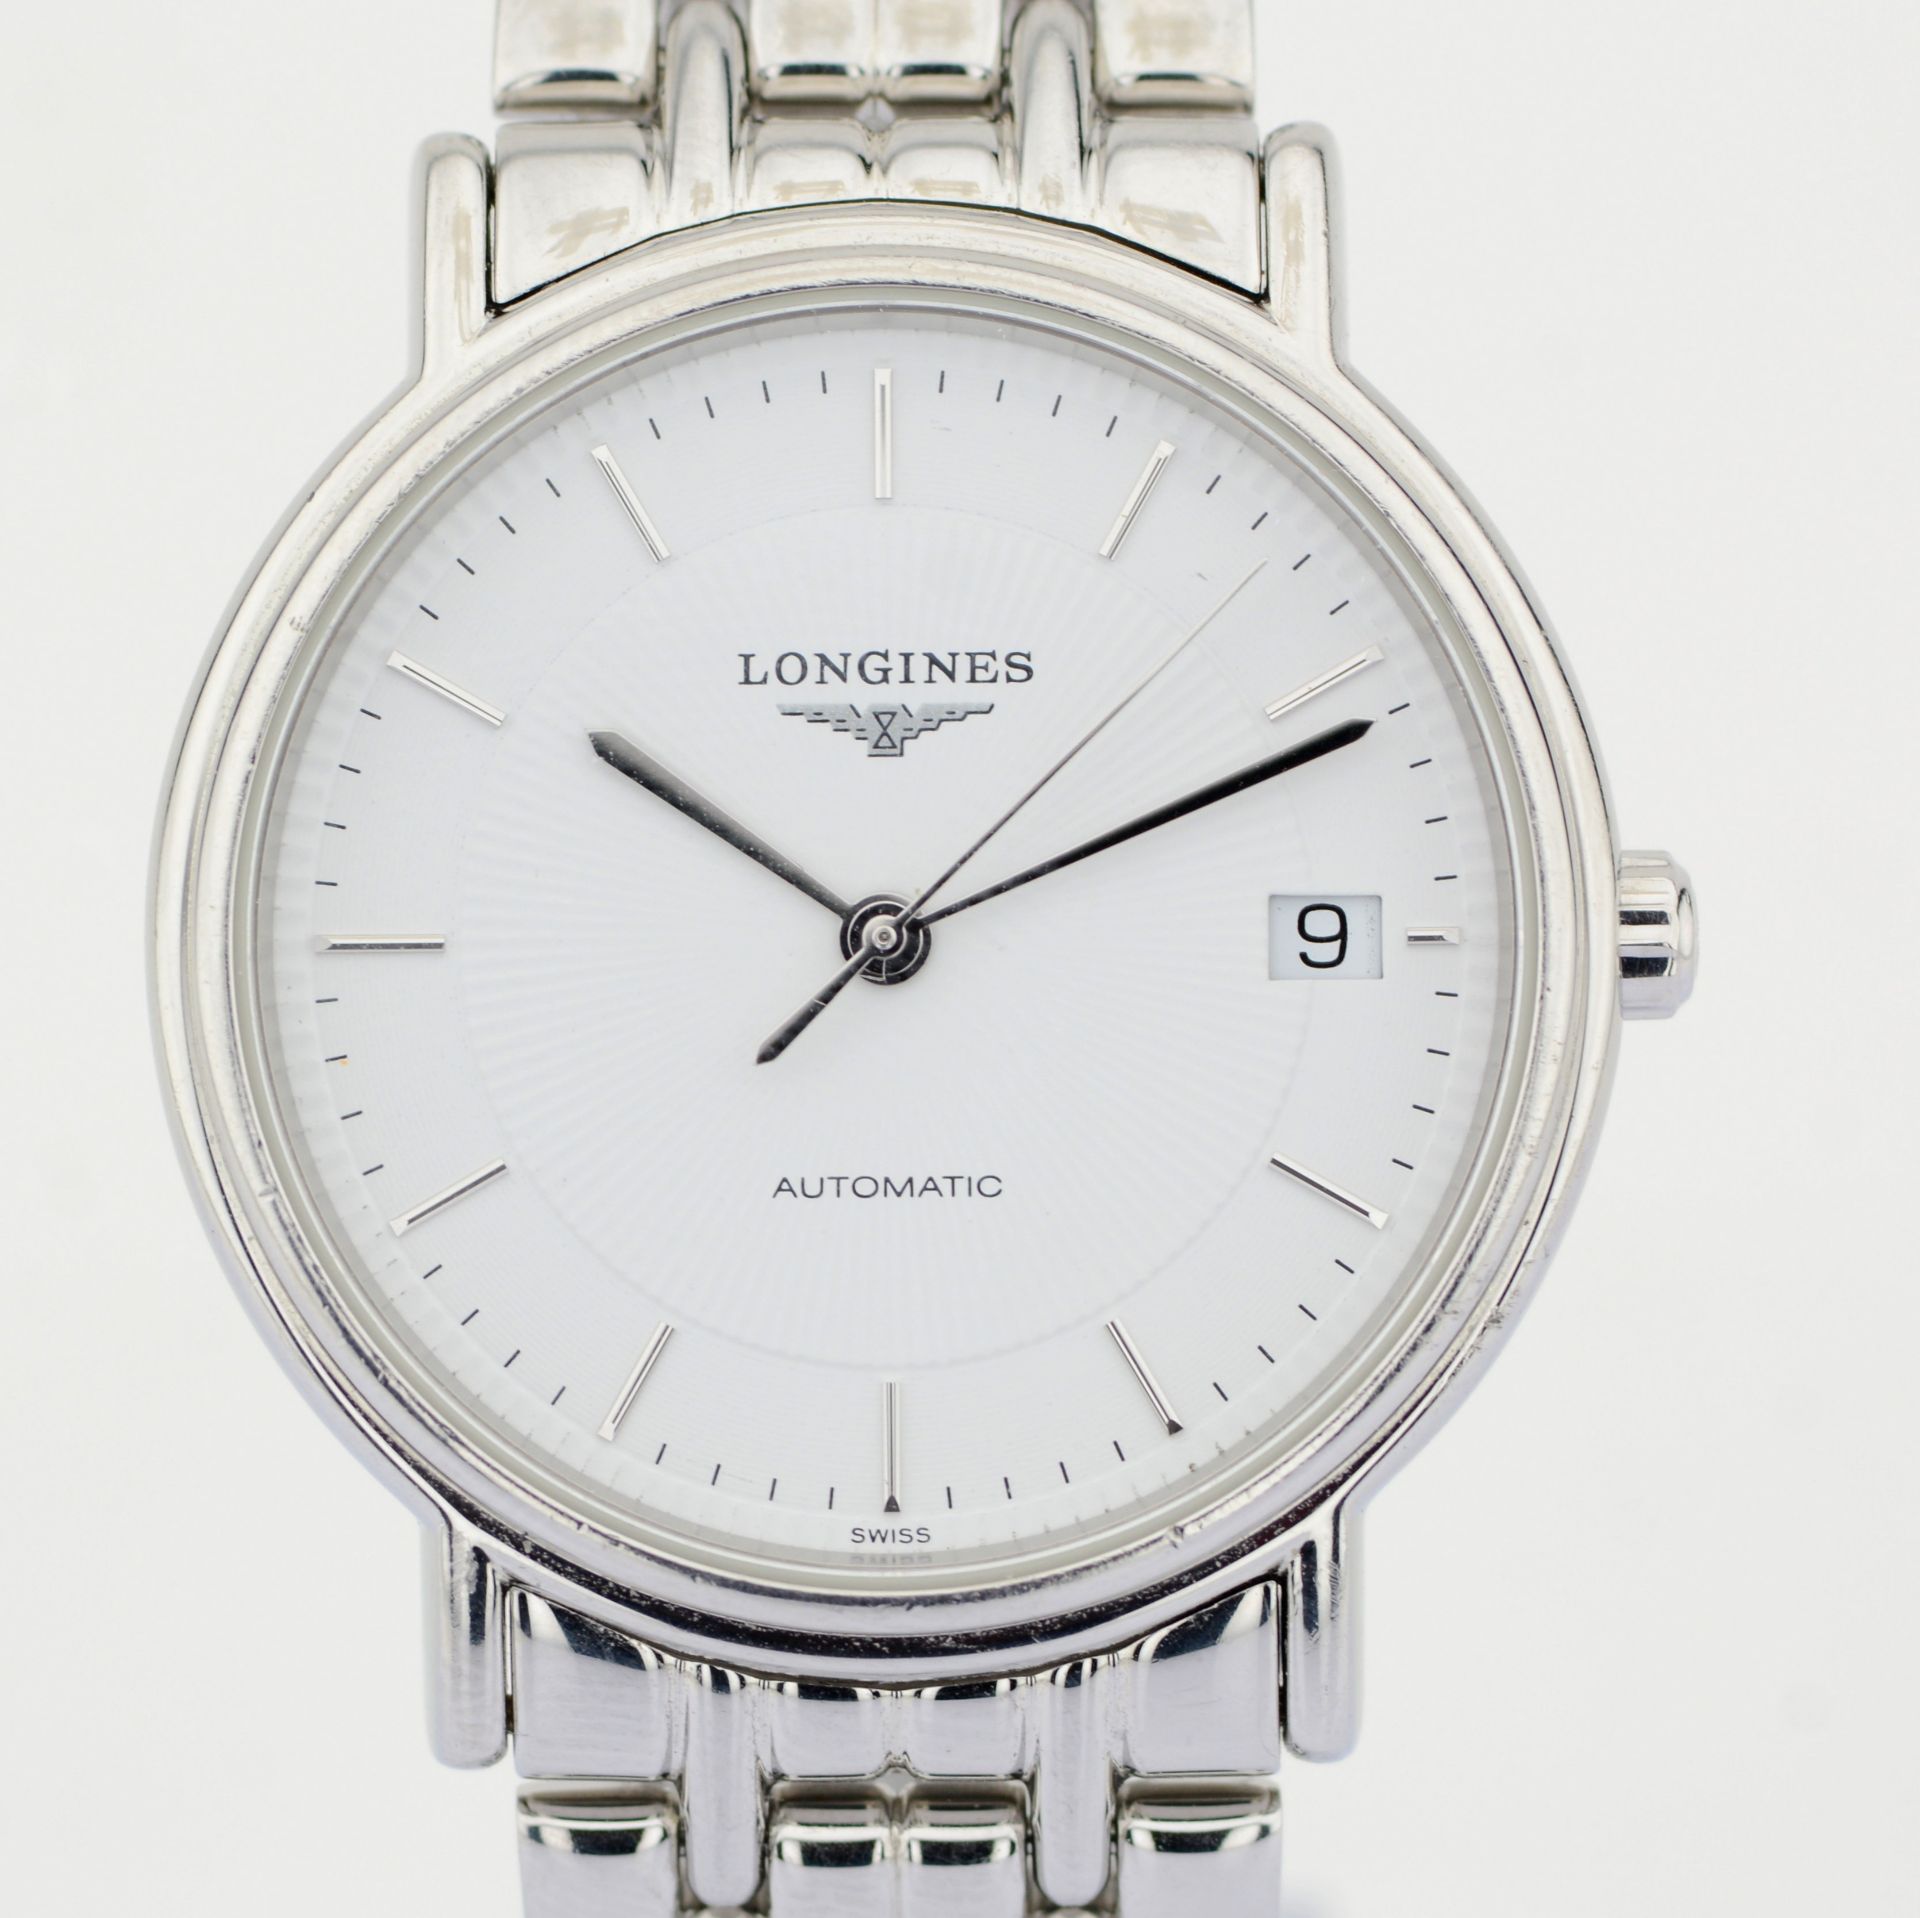 Longines / Presence Automatic Date 34 mm - Gentlmen's Steel Wrist Watch - Image 2 of 8